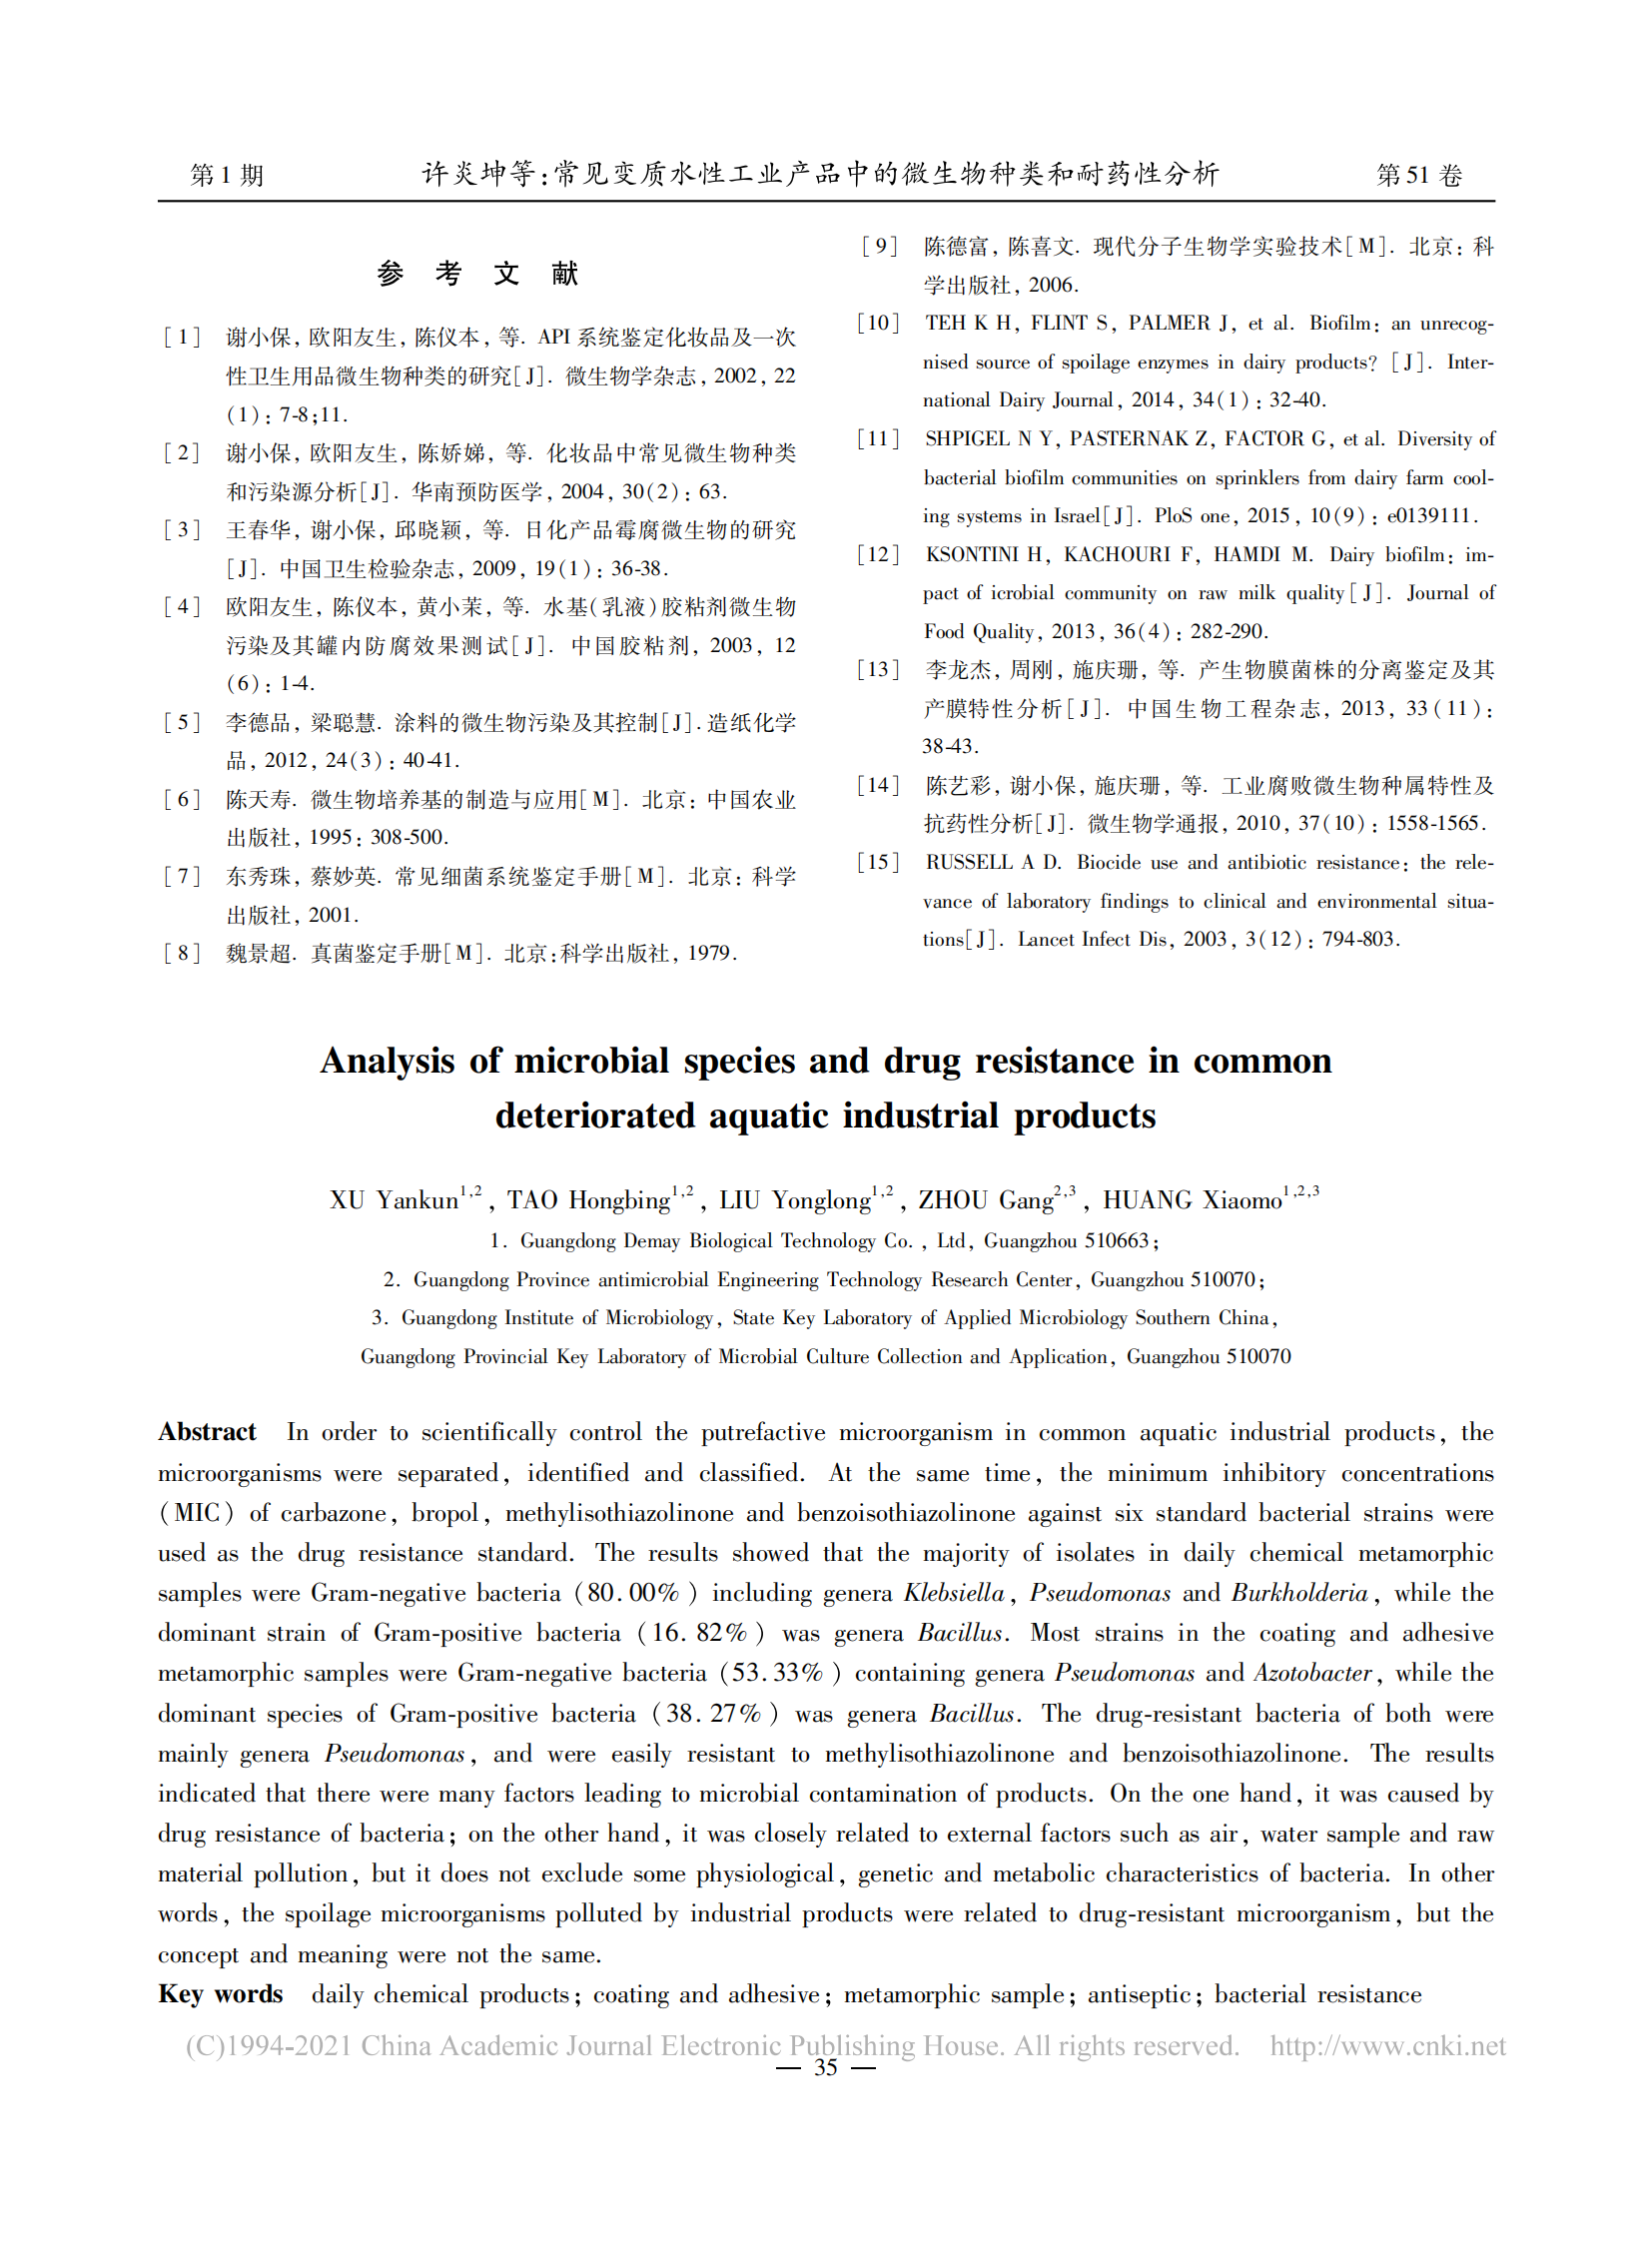 常见变质水性工业产品中的微生物种类和耐药性分析_许炎坤_05.png